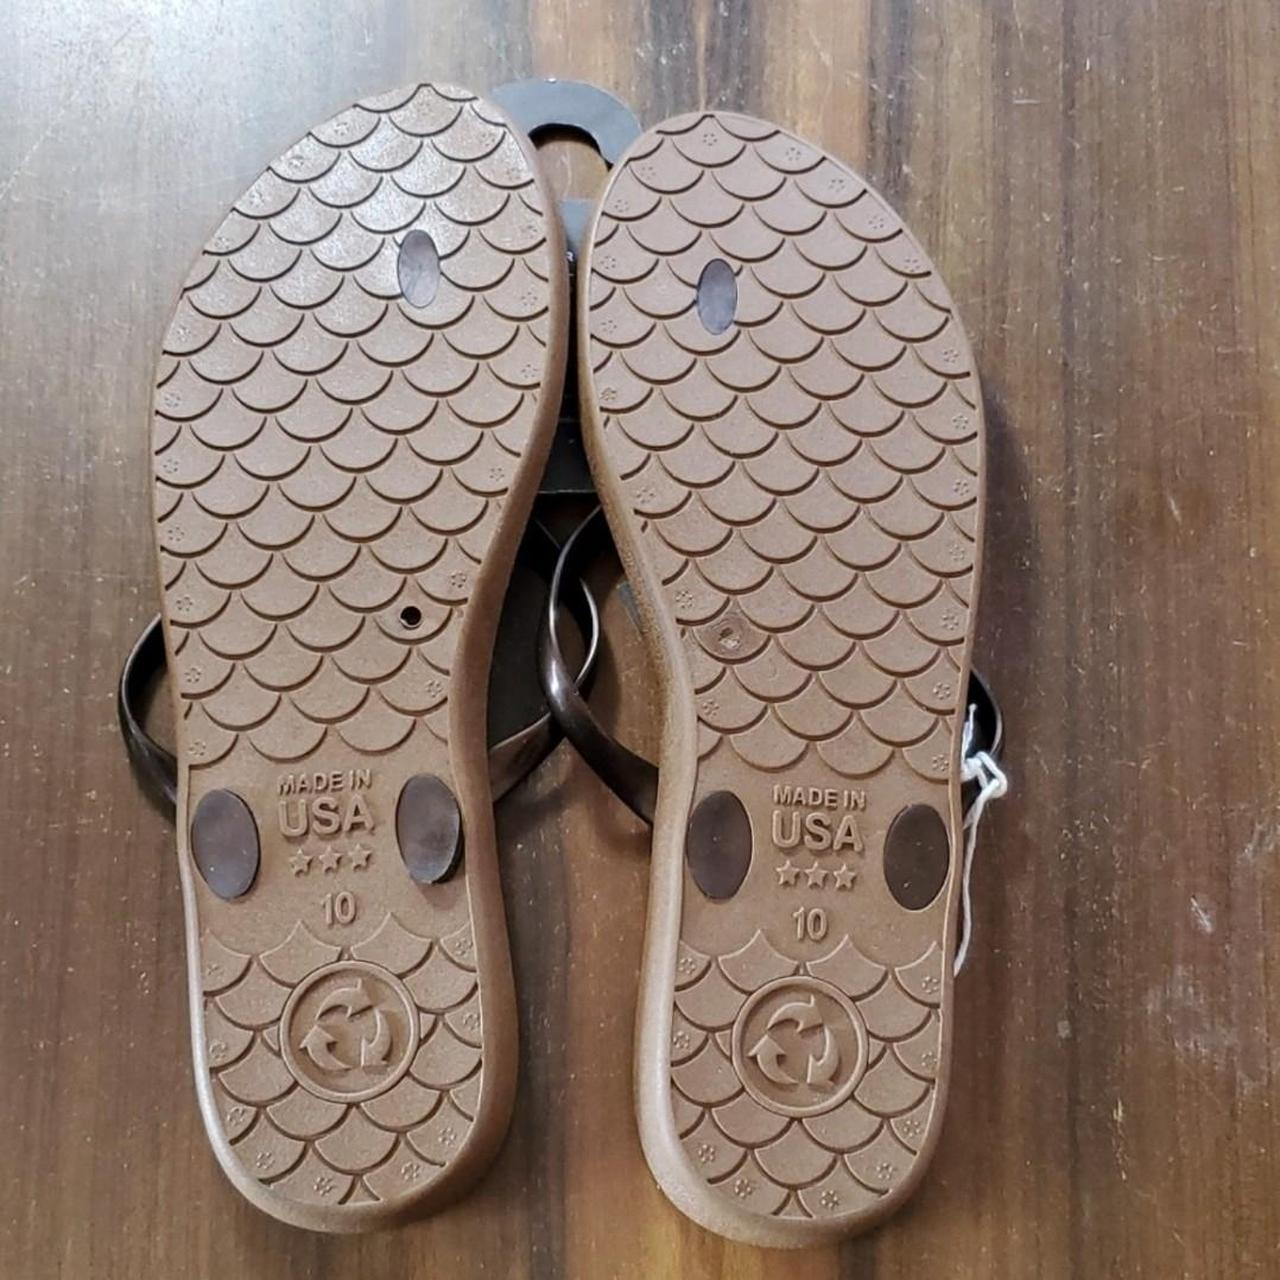 Third Oak Flip Flop Sandals Made in USA Size 11 - Depop